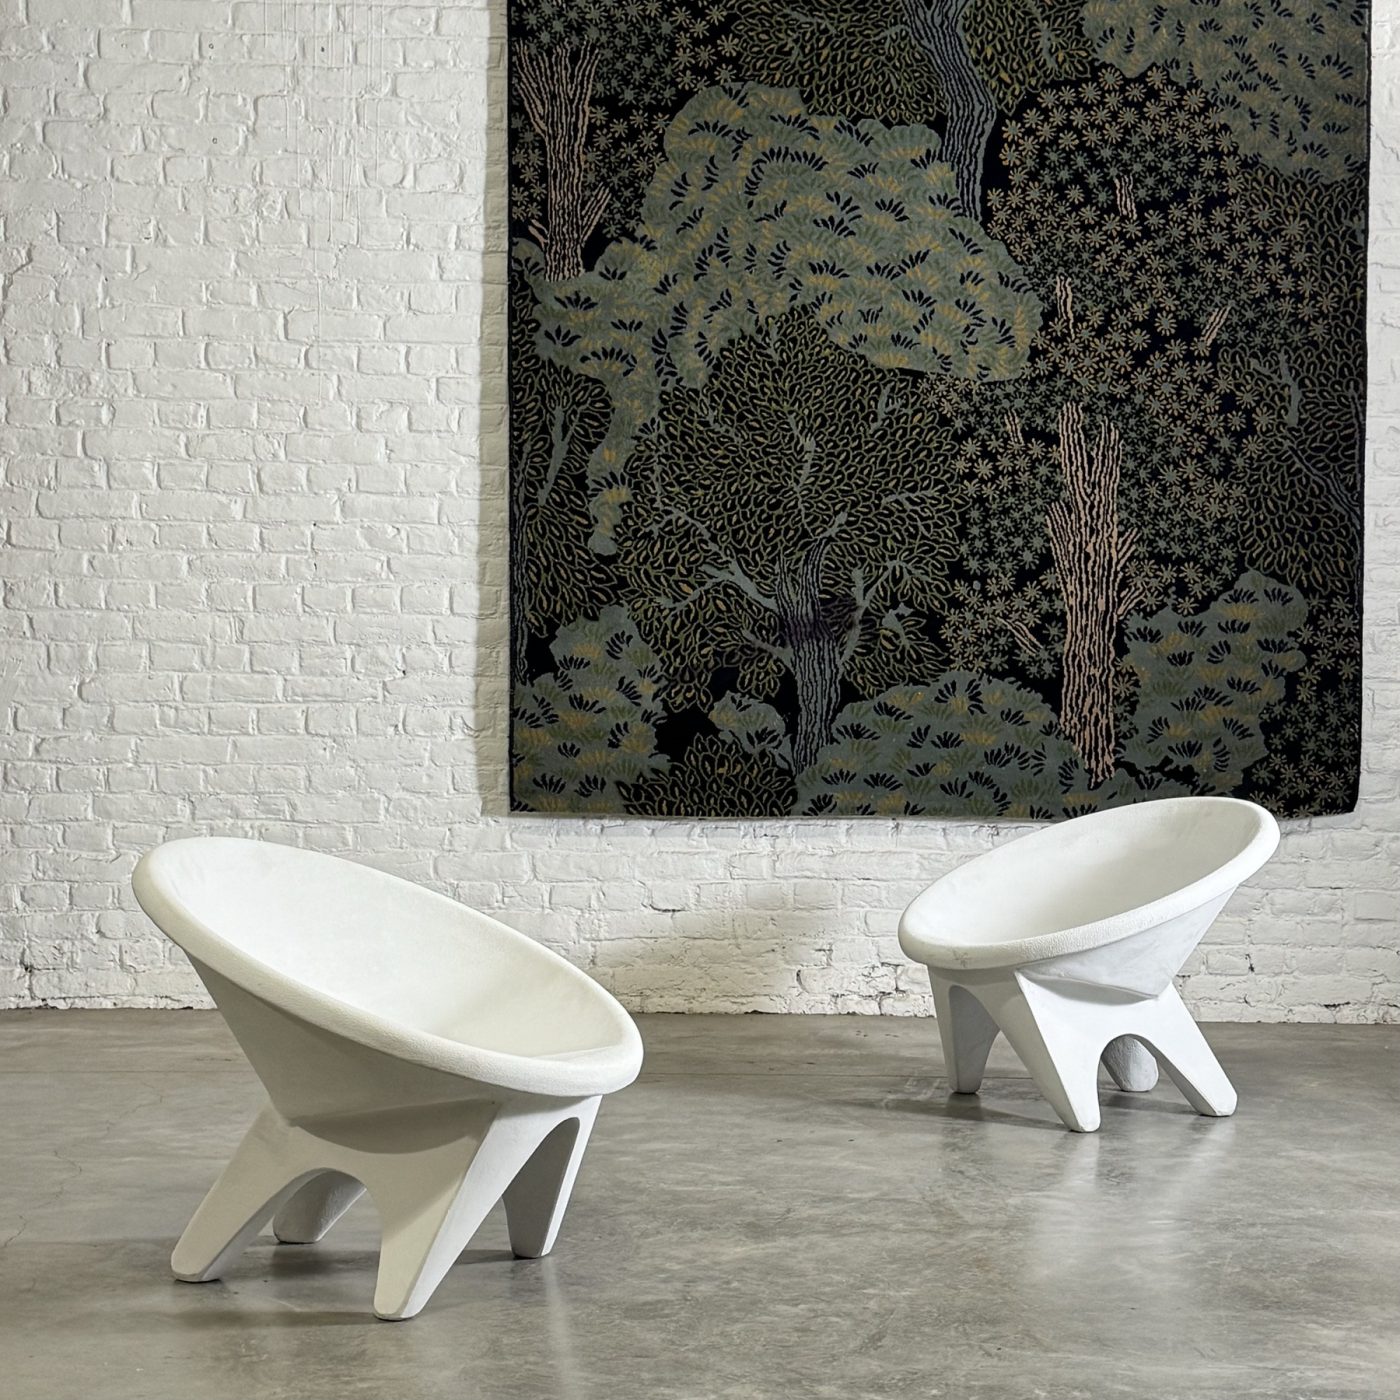 objet-vagabond-concrete-armchairs0000